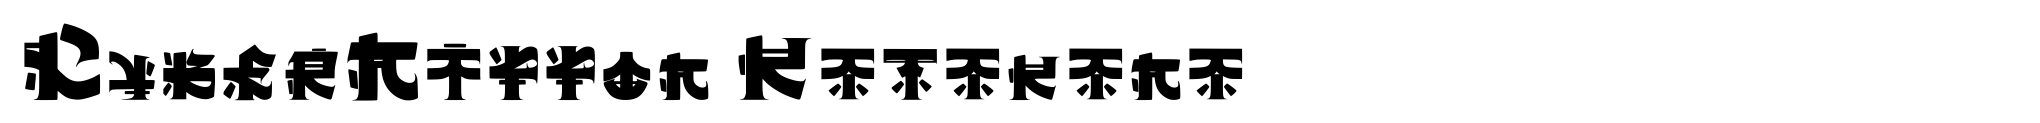 CyberNippon Katakana image